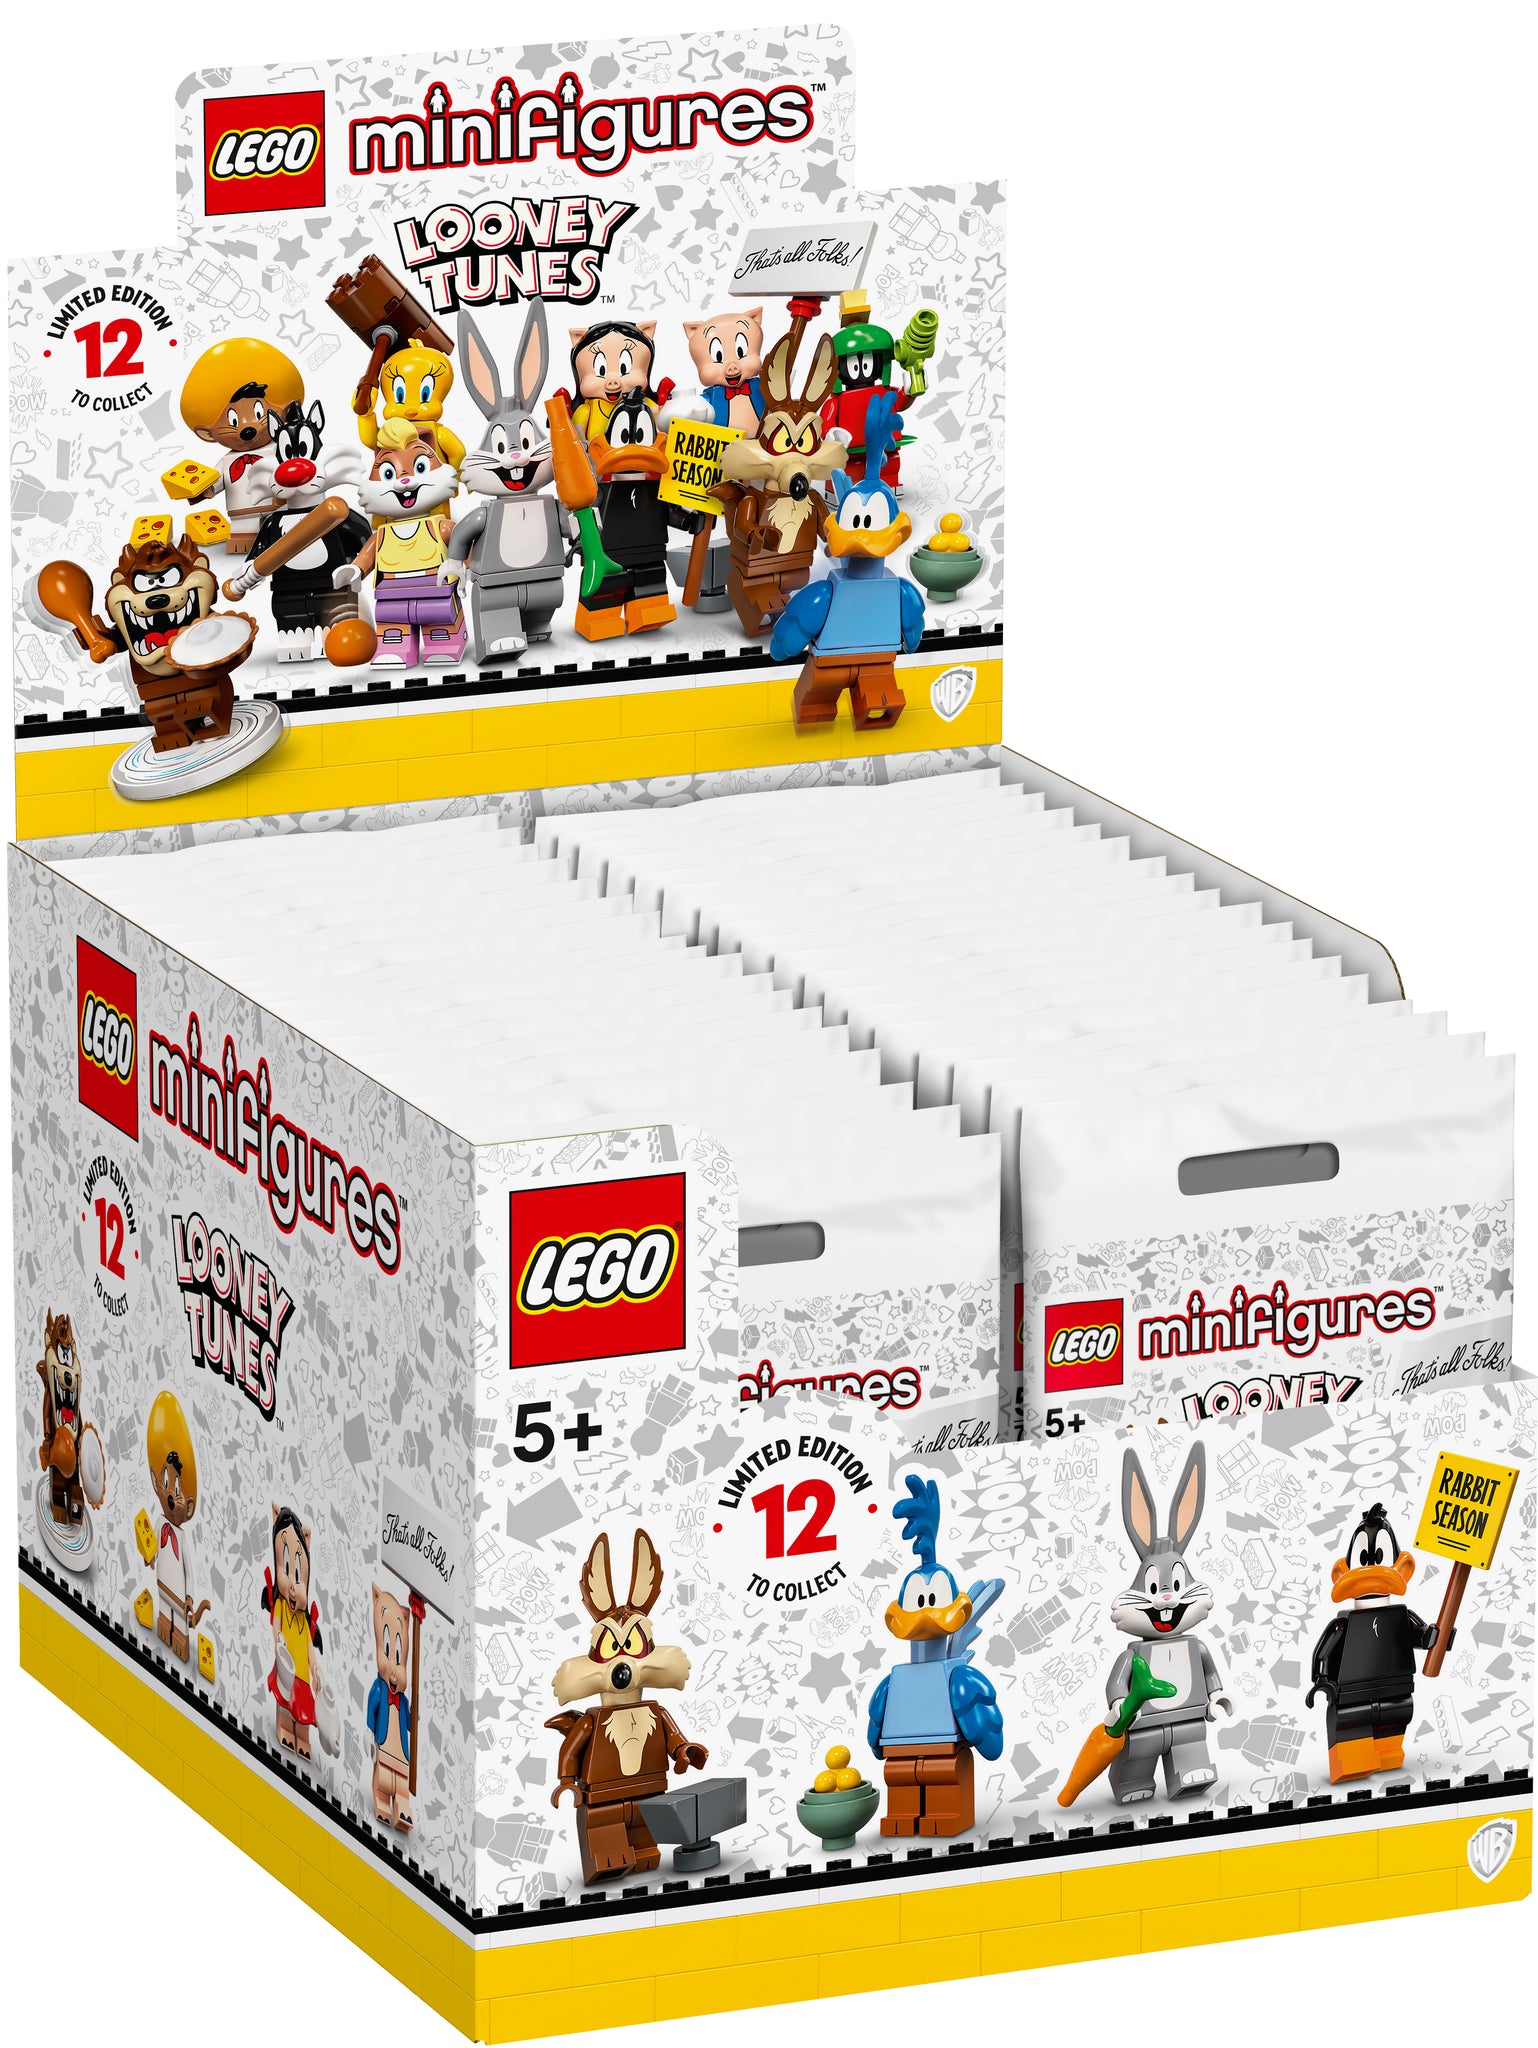 レゴ レゴ ミニフィギュア ルーニー テューンズ シリーズ 箱売り レゴランド ディスカバリー センター公式オンラインショップ